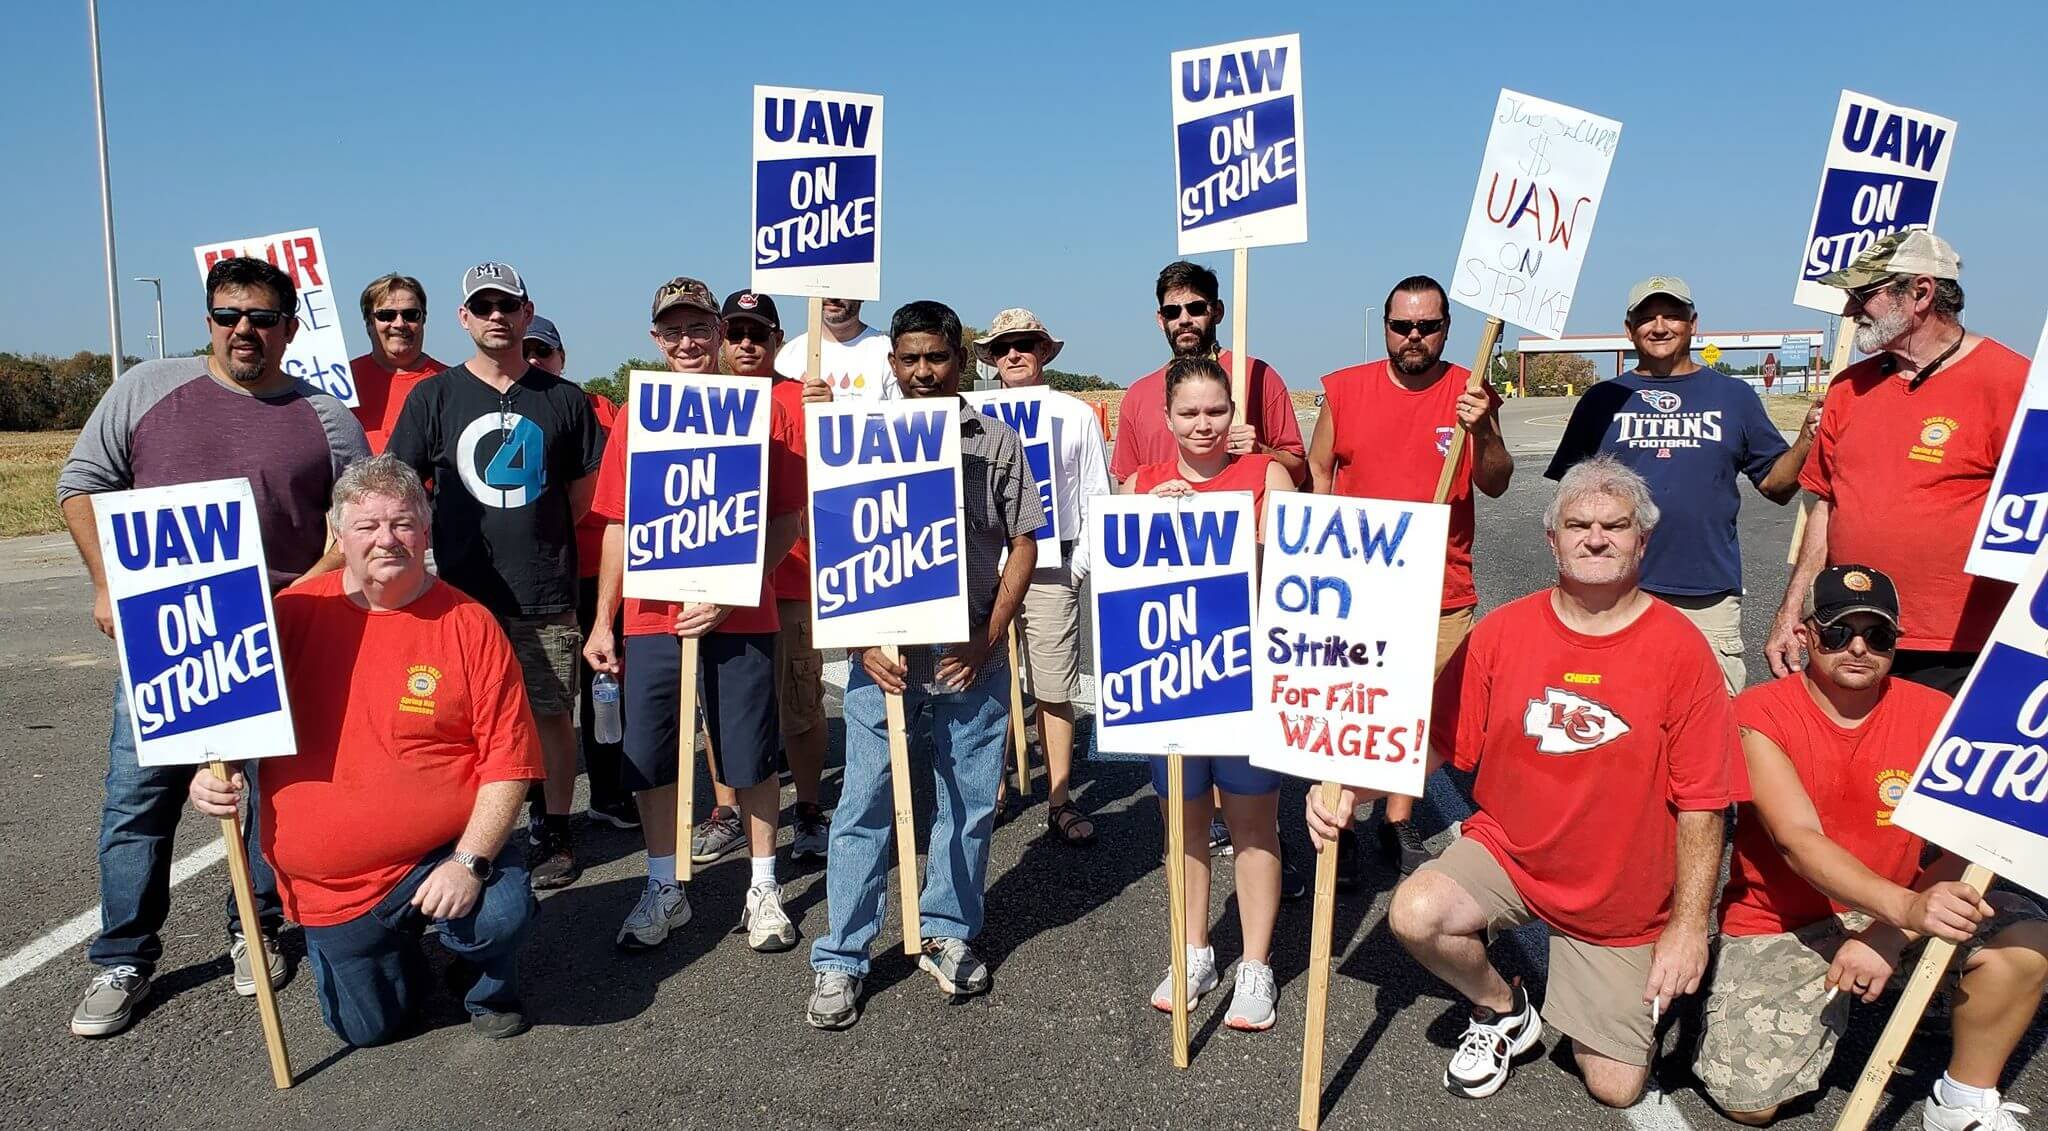 UAW는 GM의 양보로 추가 파업을 방지하면서 ‘파업이 효과가 있다’고 말했습니다.